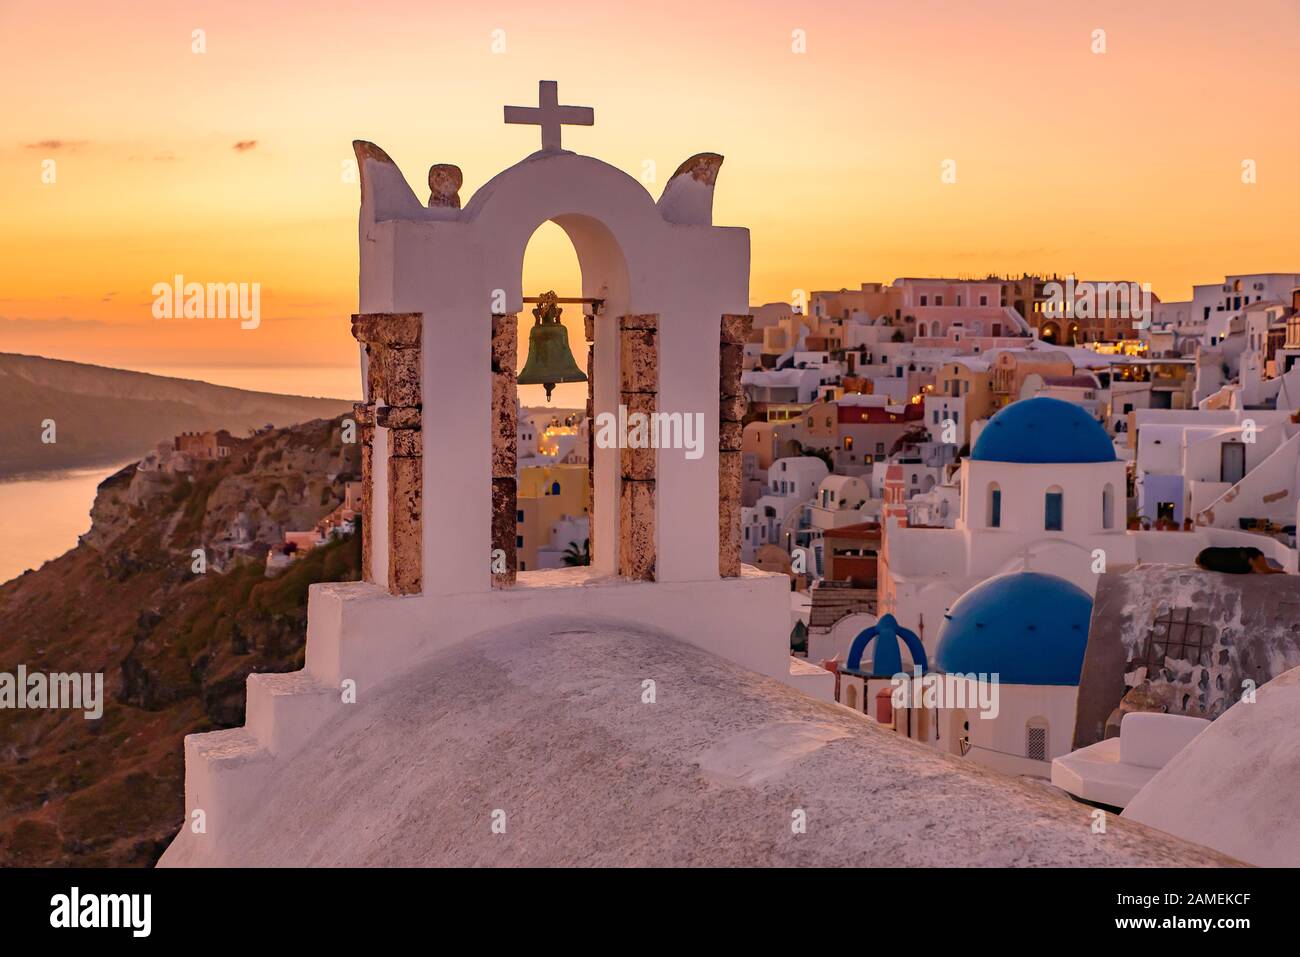 Églises à dôme bleu et clocher face à la mer Égée avec lumière chaude au coucher du soleil à Oia, Santorin, Grèce Banque D'Images